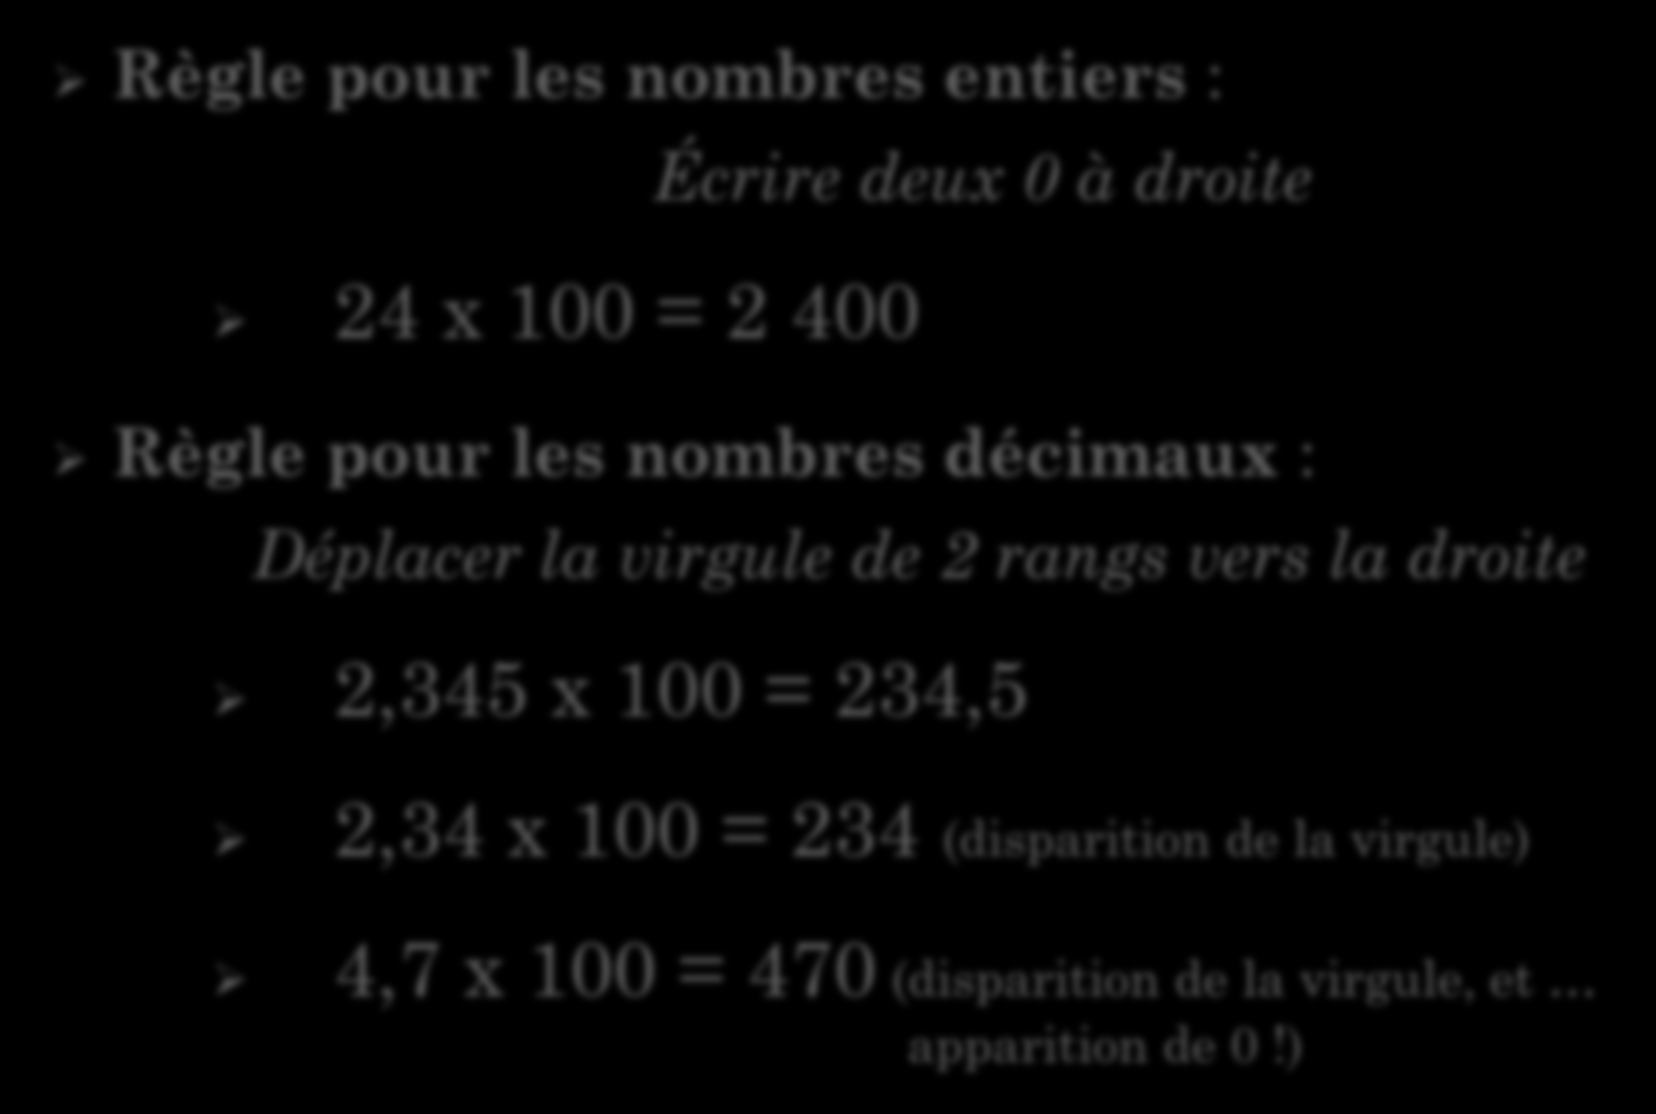 MULTIPLIER PAR 100 Règle pour les nombres entiers : Écrire deux 0 à droite 24 x 100 = 2 400 Règle pour les nombres décimaux : Déplacer la virgule de 2